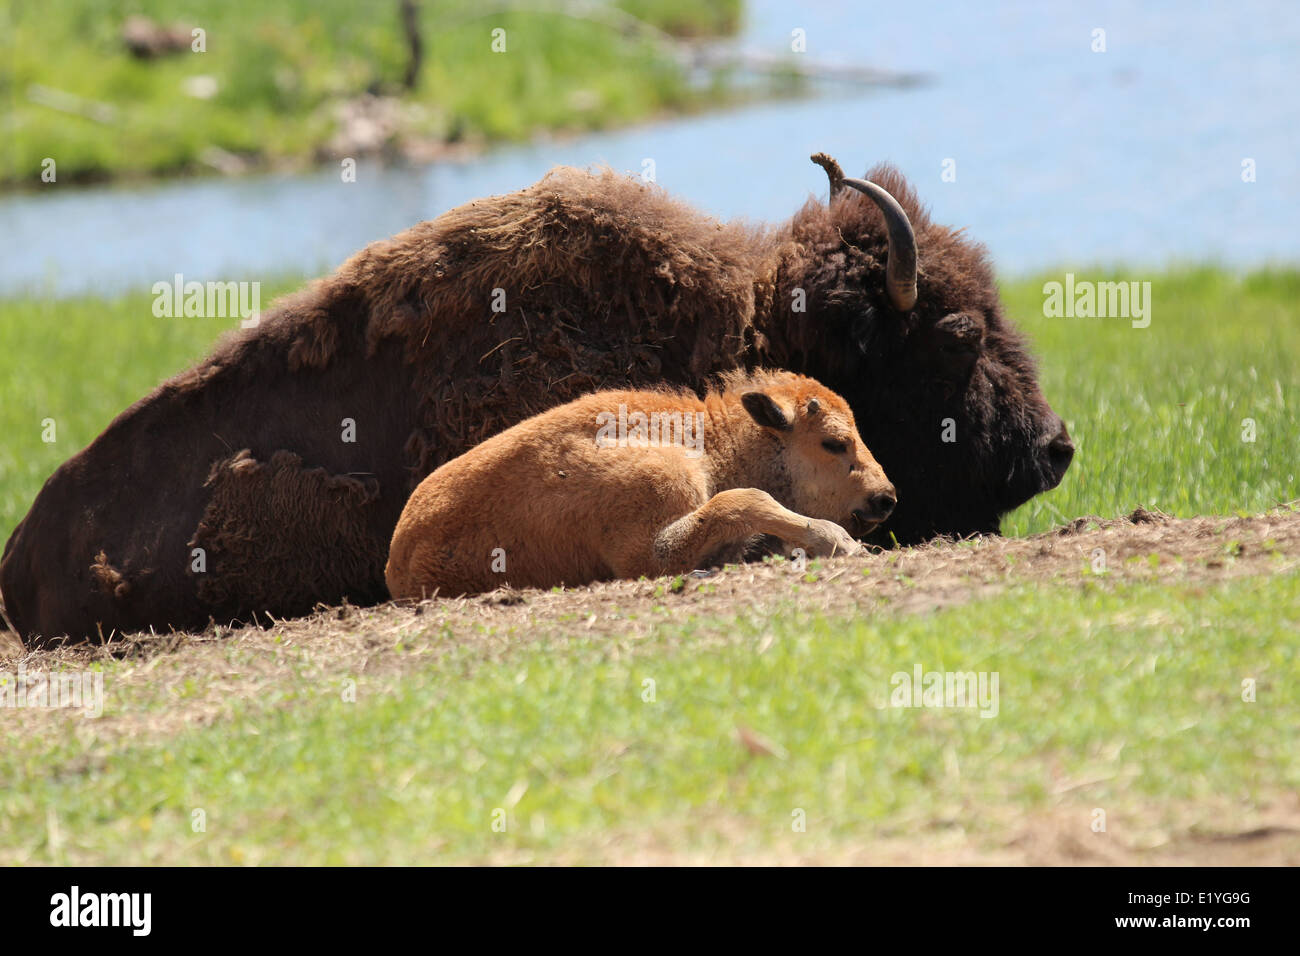 La madre y el bebé animal Foto de stock